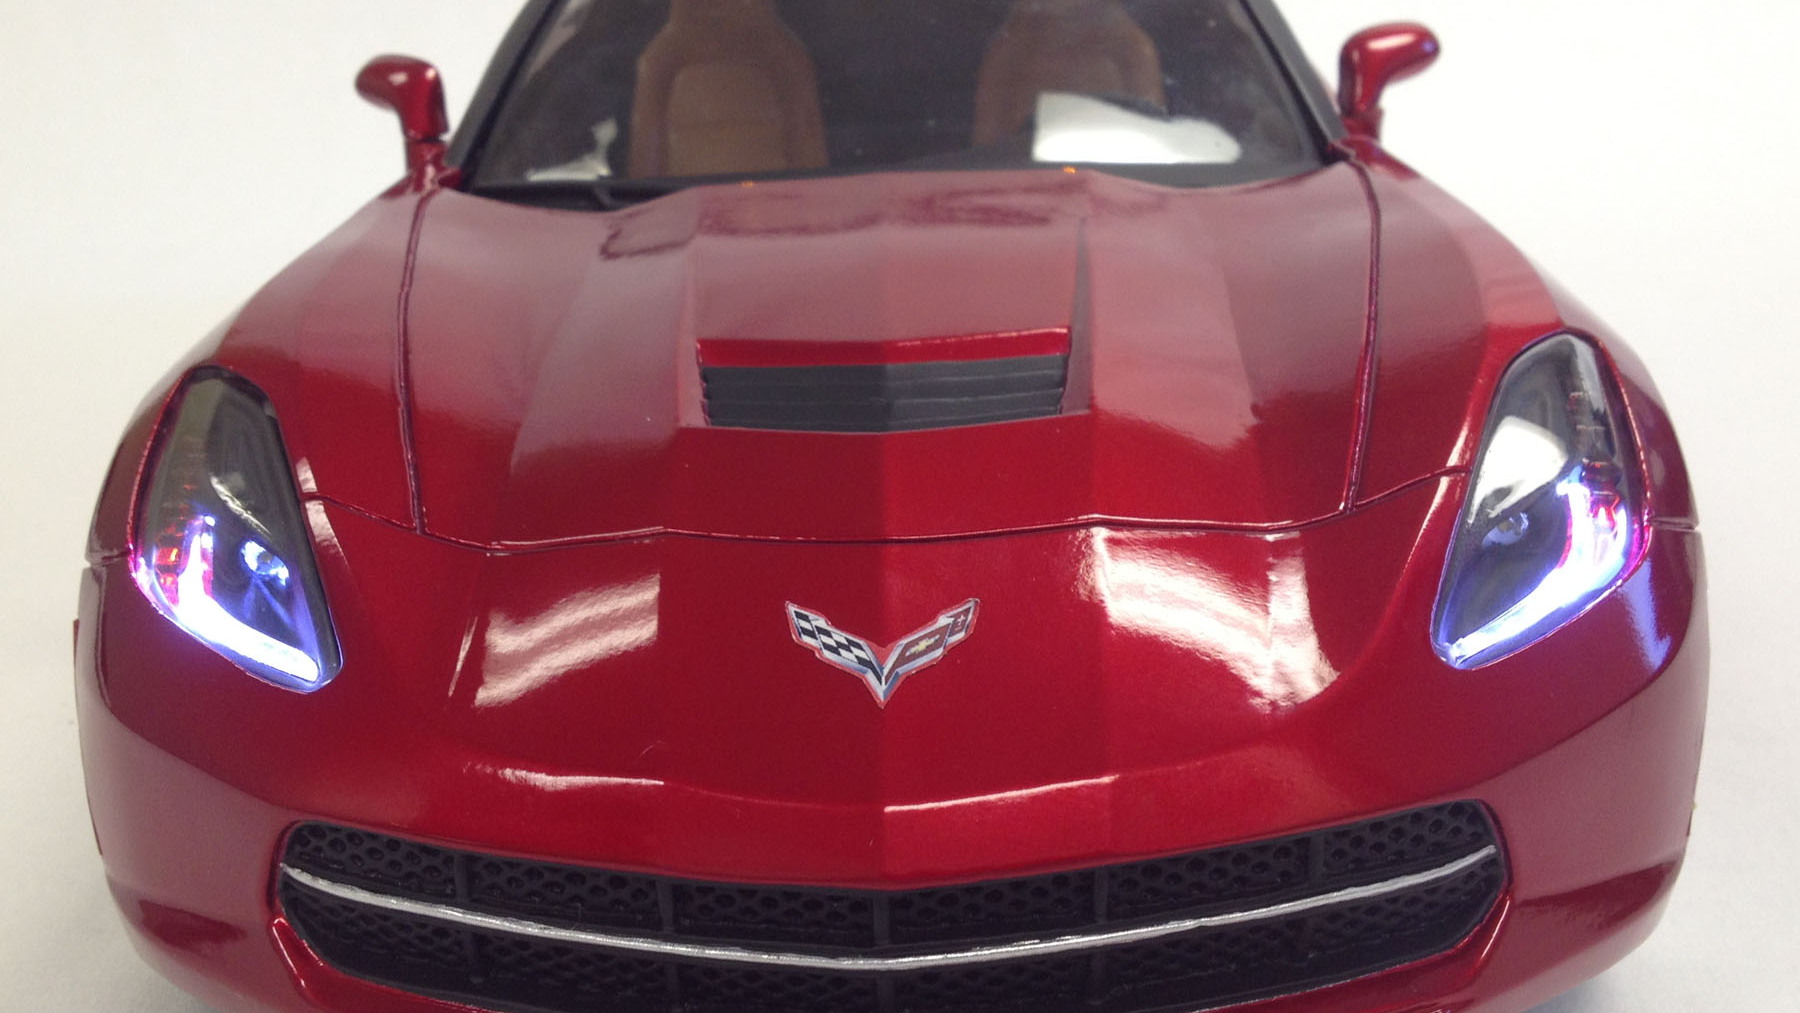 New Bright's 1/8 scale, radio-controlled 2014 Corvette Singray - image: New Bright